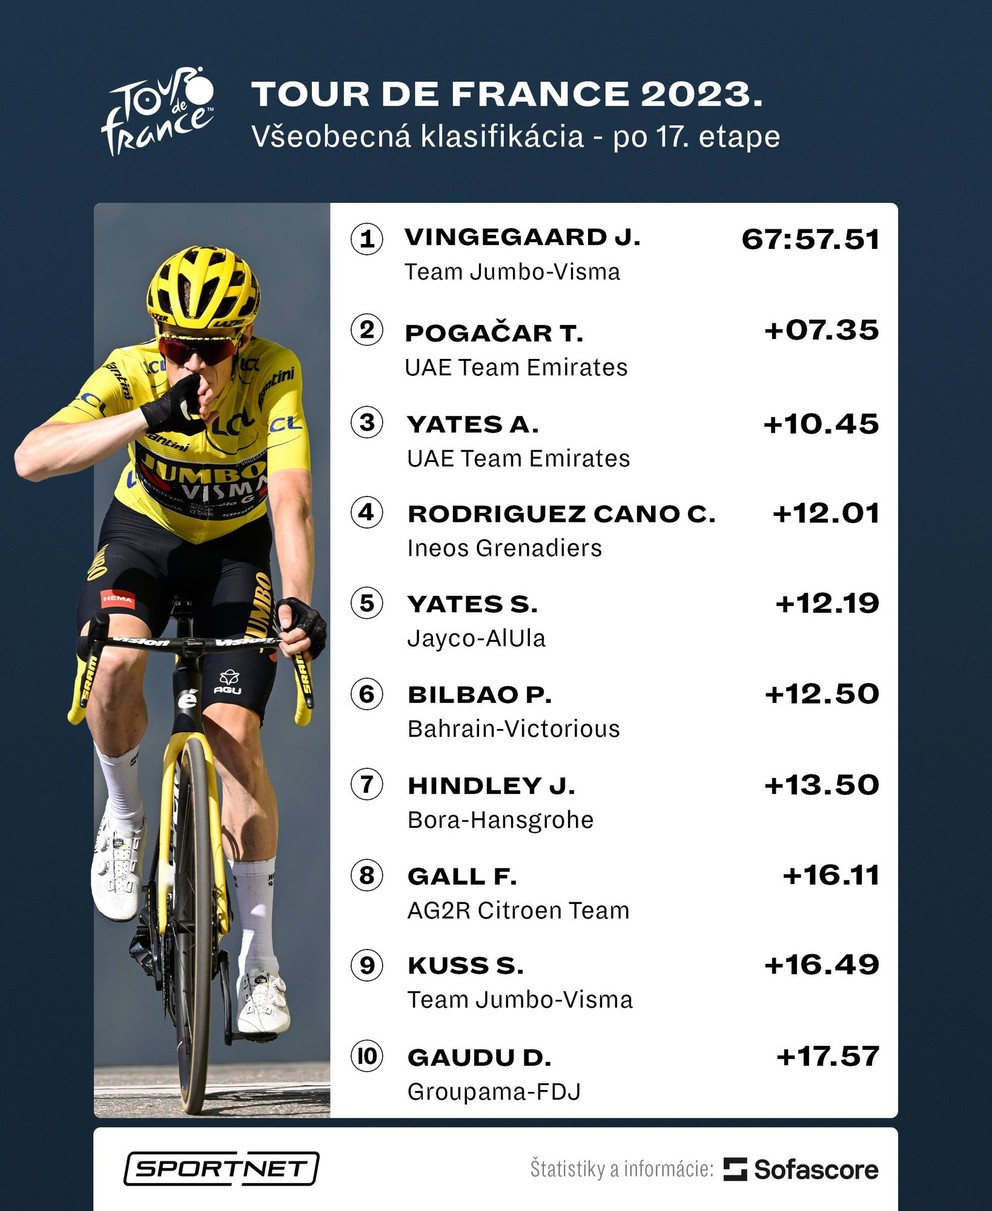 Celkové poradie v boji o žltý dres po 17. etape na Tour de France 2023.